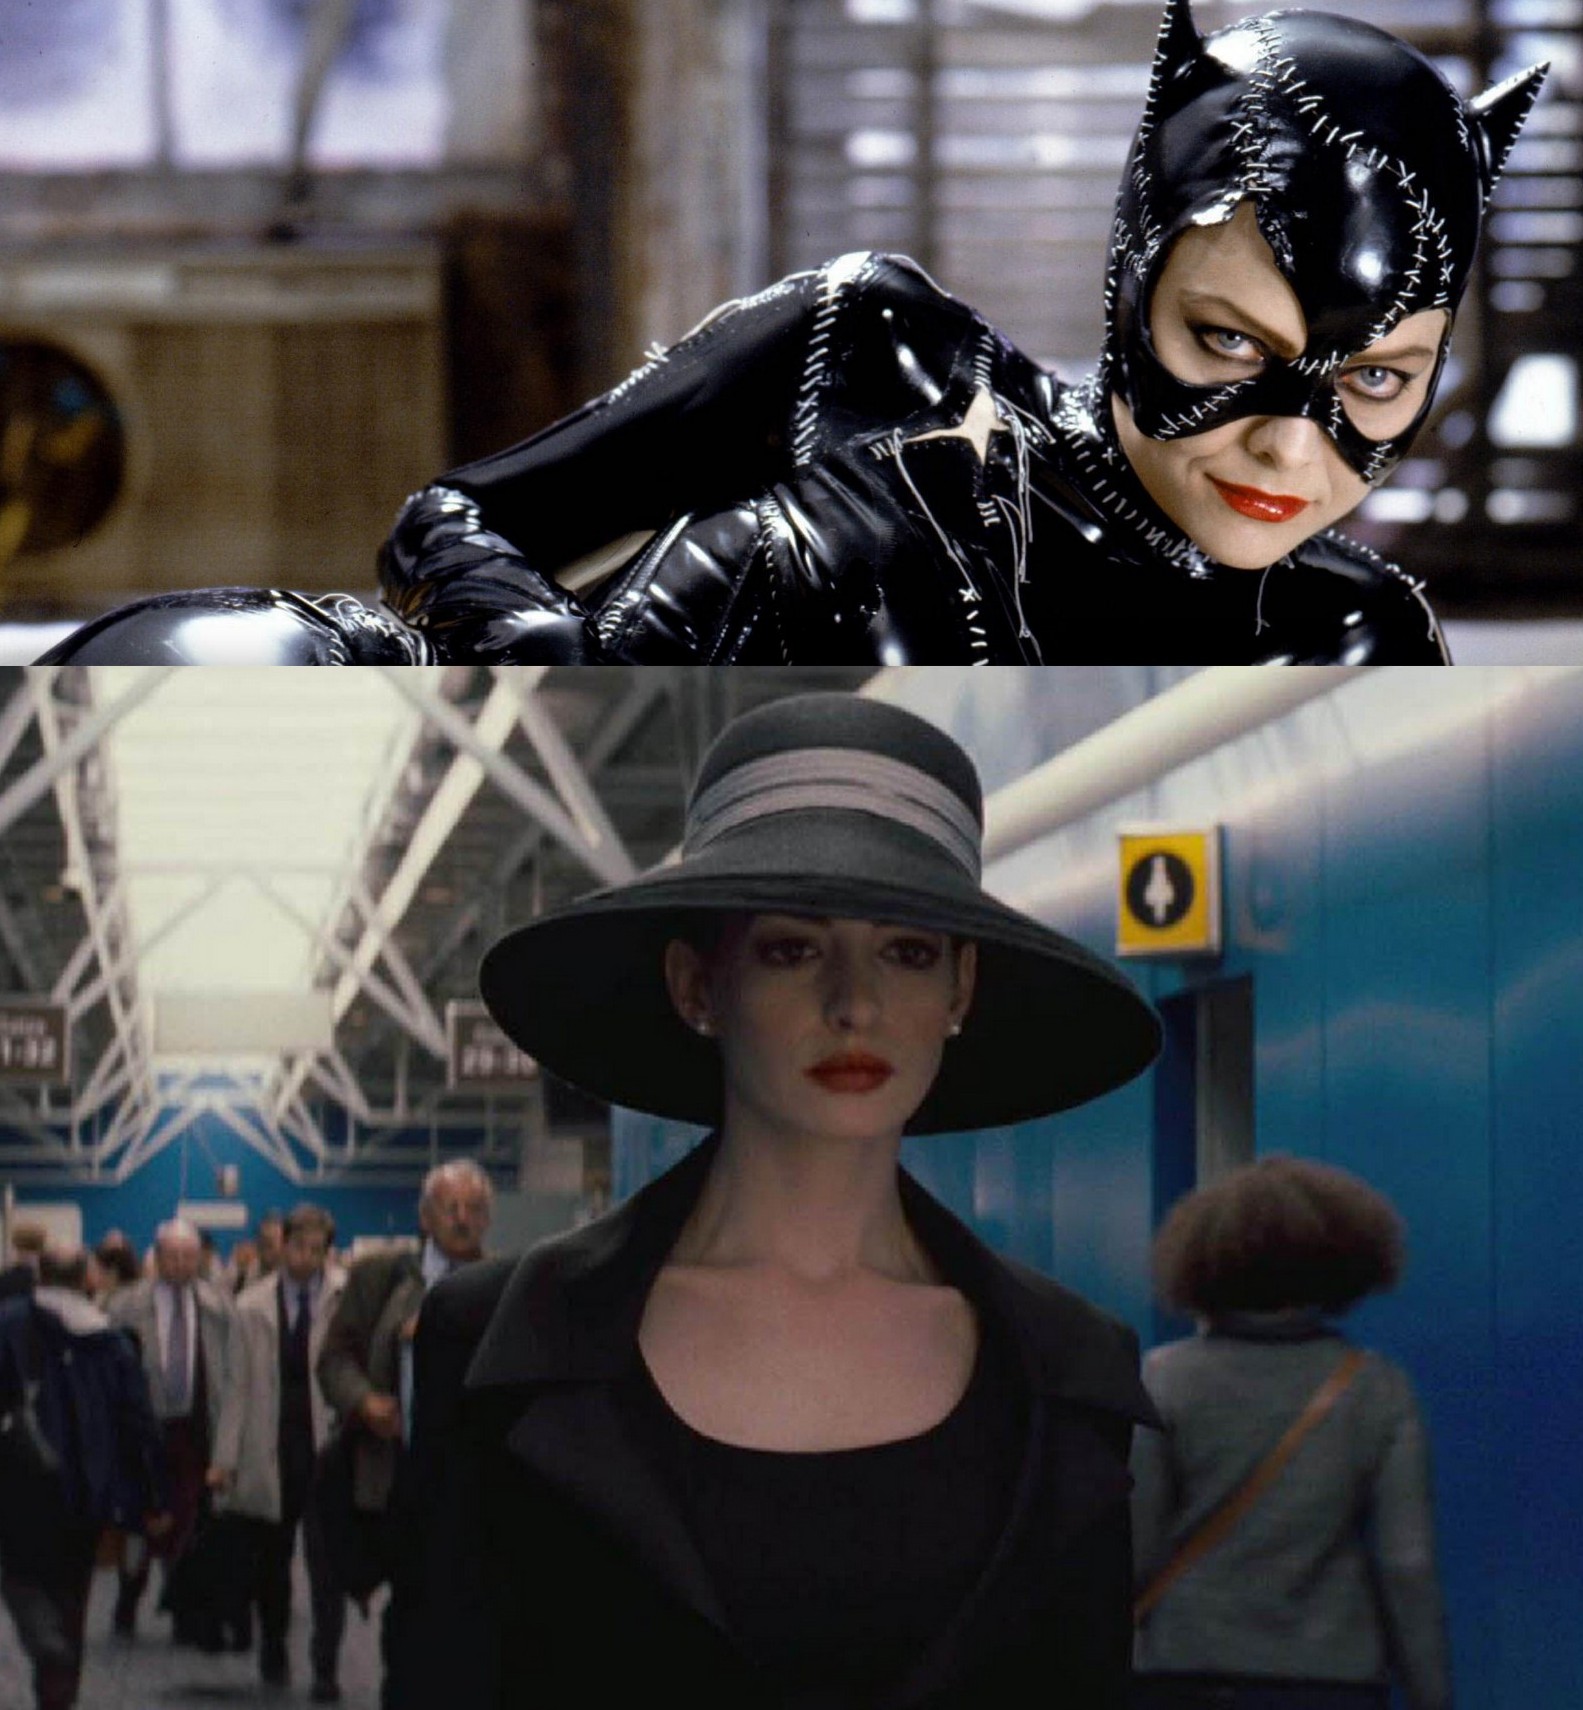 Michelle Pfeiffer hade rollen som den läderdräktsbärande Catwoman i Tim Burtons "Batman Returns". Nu är det Anne Hathaways tur då vi i sommar får se henne porträttera den förföriska kvinnan i "The Dark Knight Rises". Vem tror du passar bäst som Catwoman?